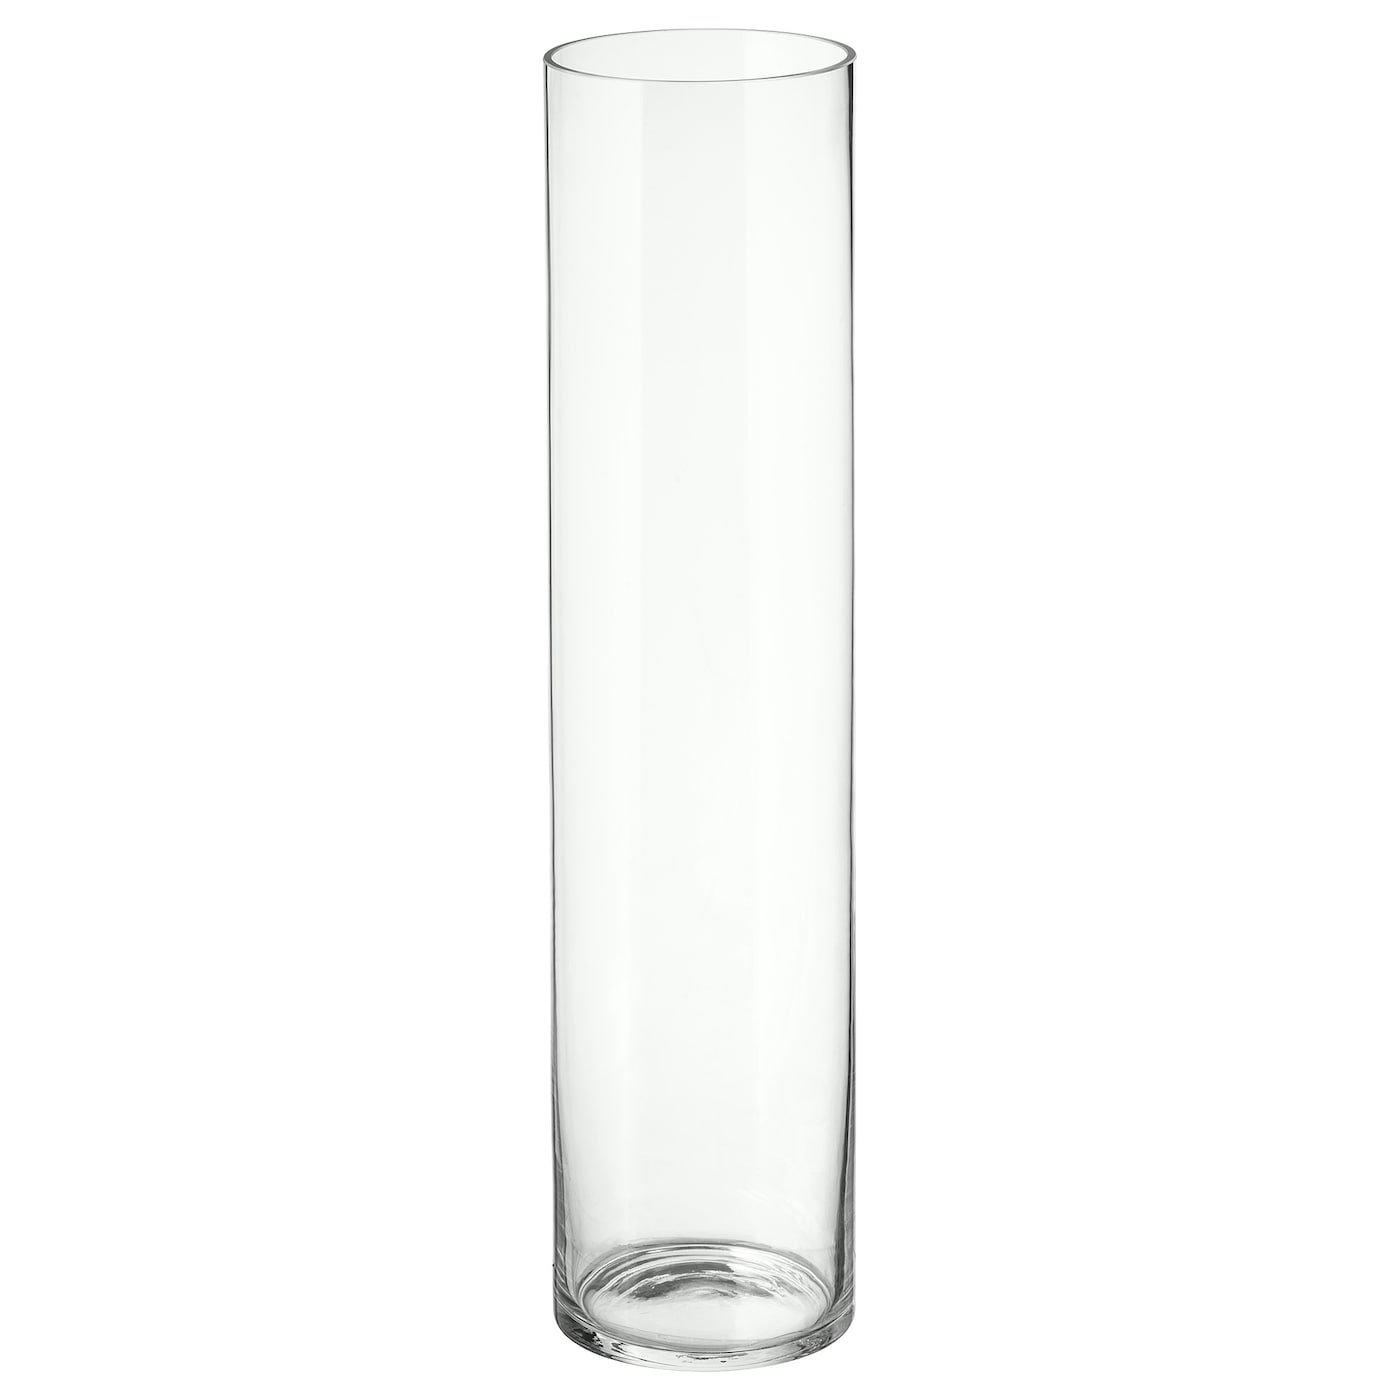 CYLINDER Vase